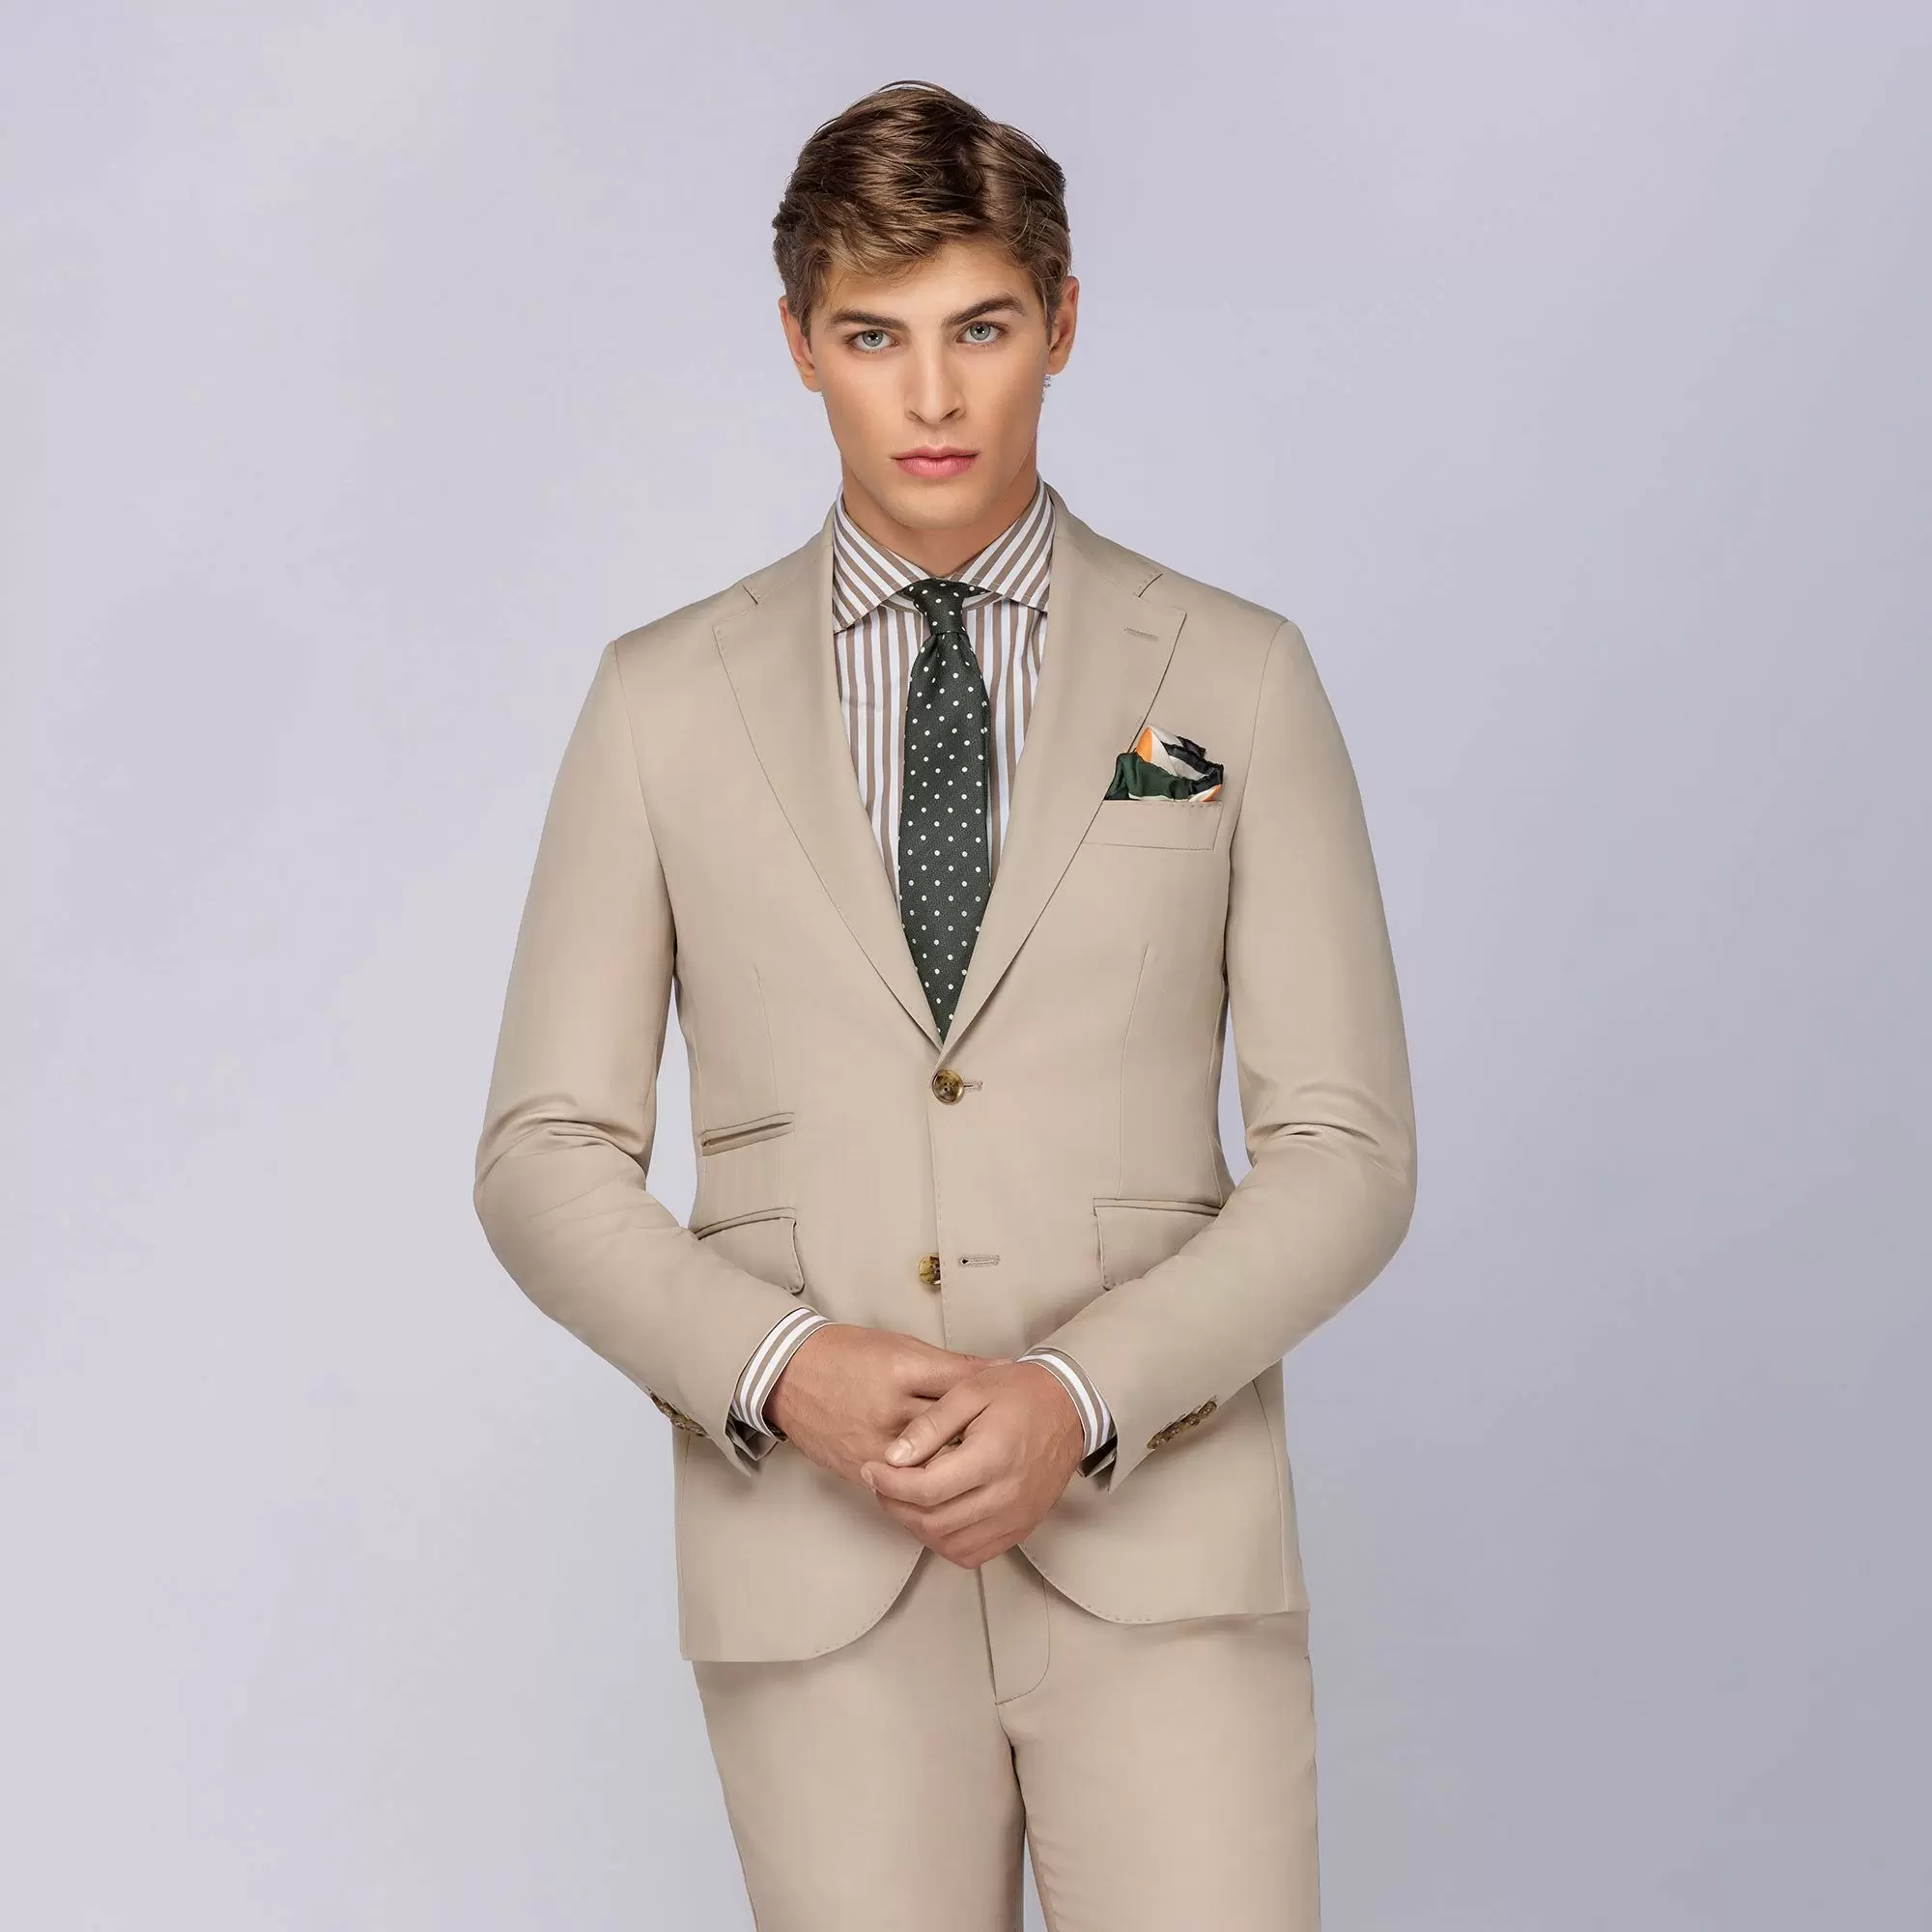 Ανδρικό Κοστούμι Μάλλινο Solaro Μπεζ Tailor Italian Wear